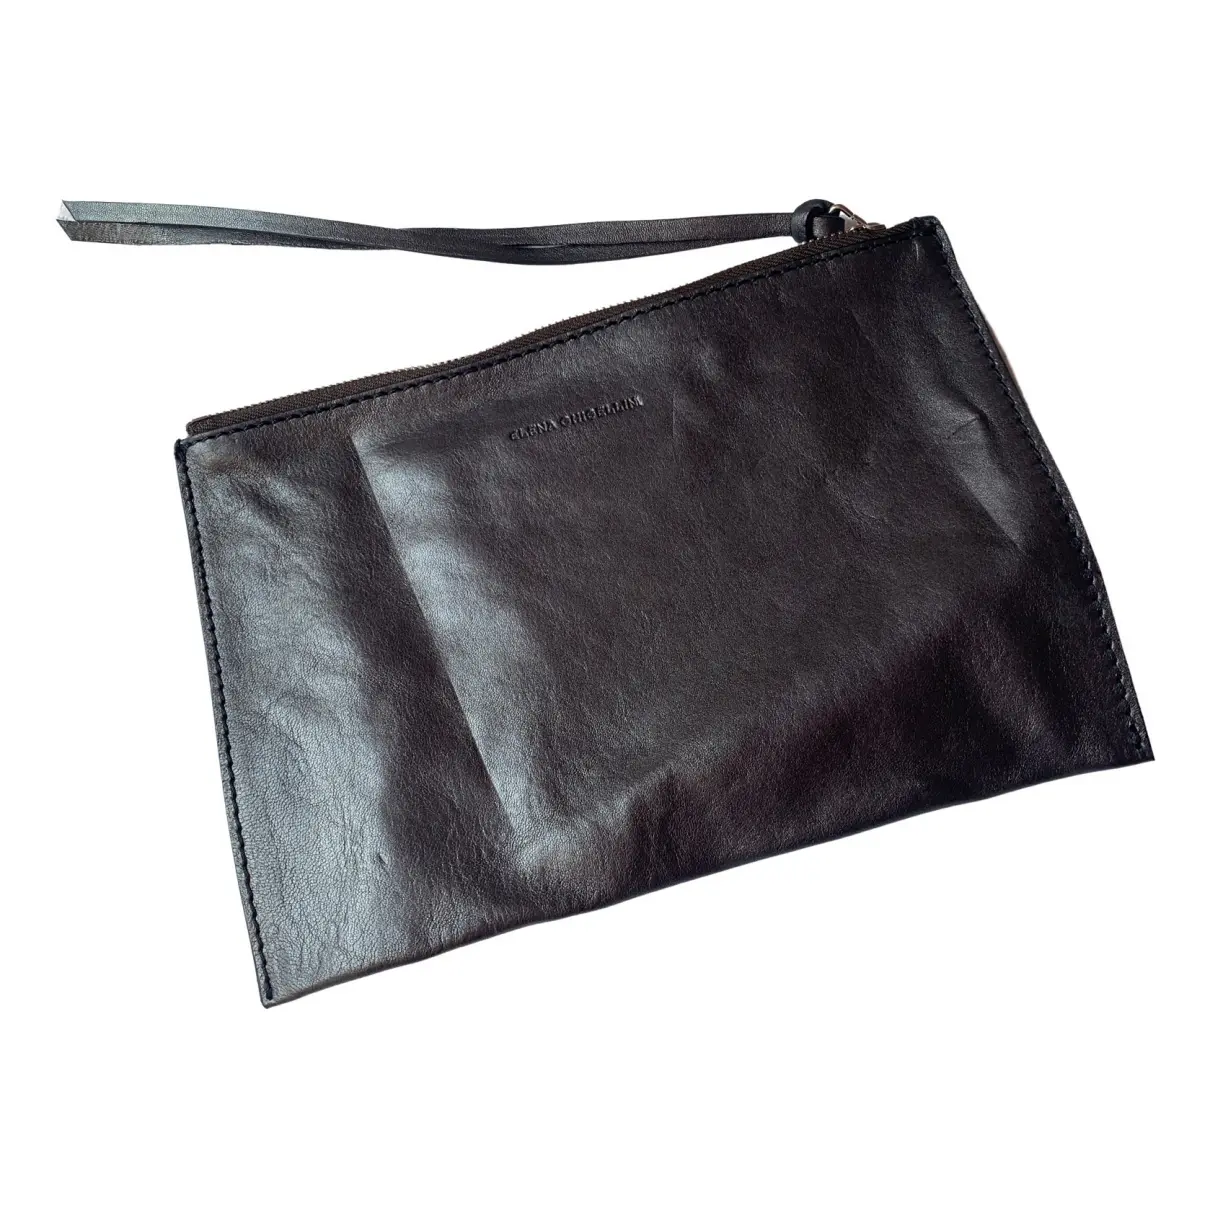 Leather clutch bag Elena Ghisellini